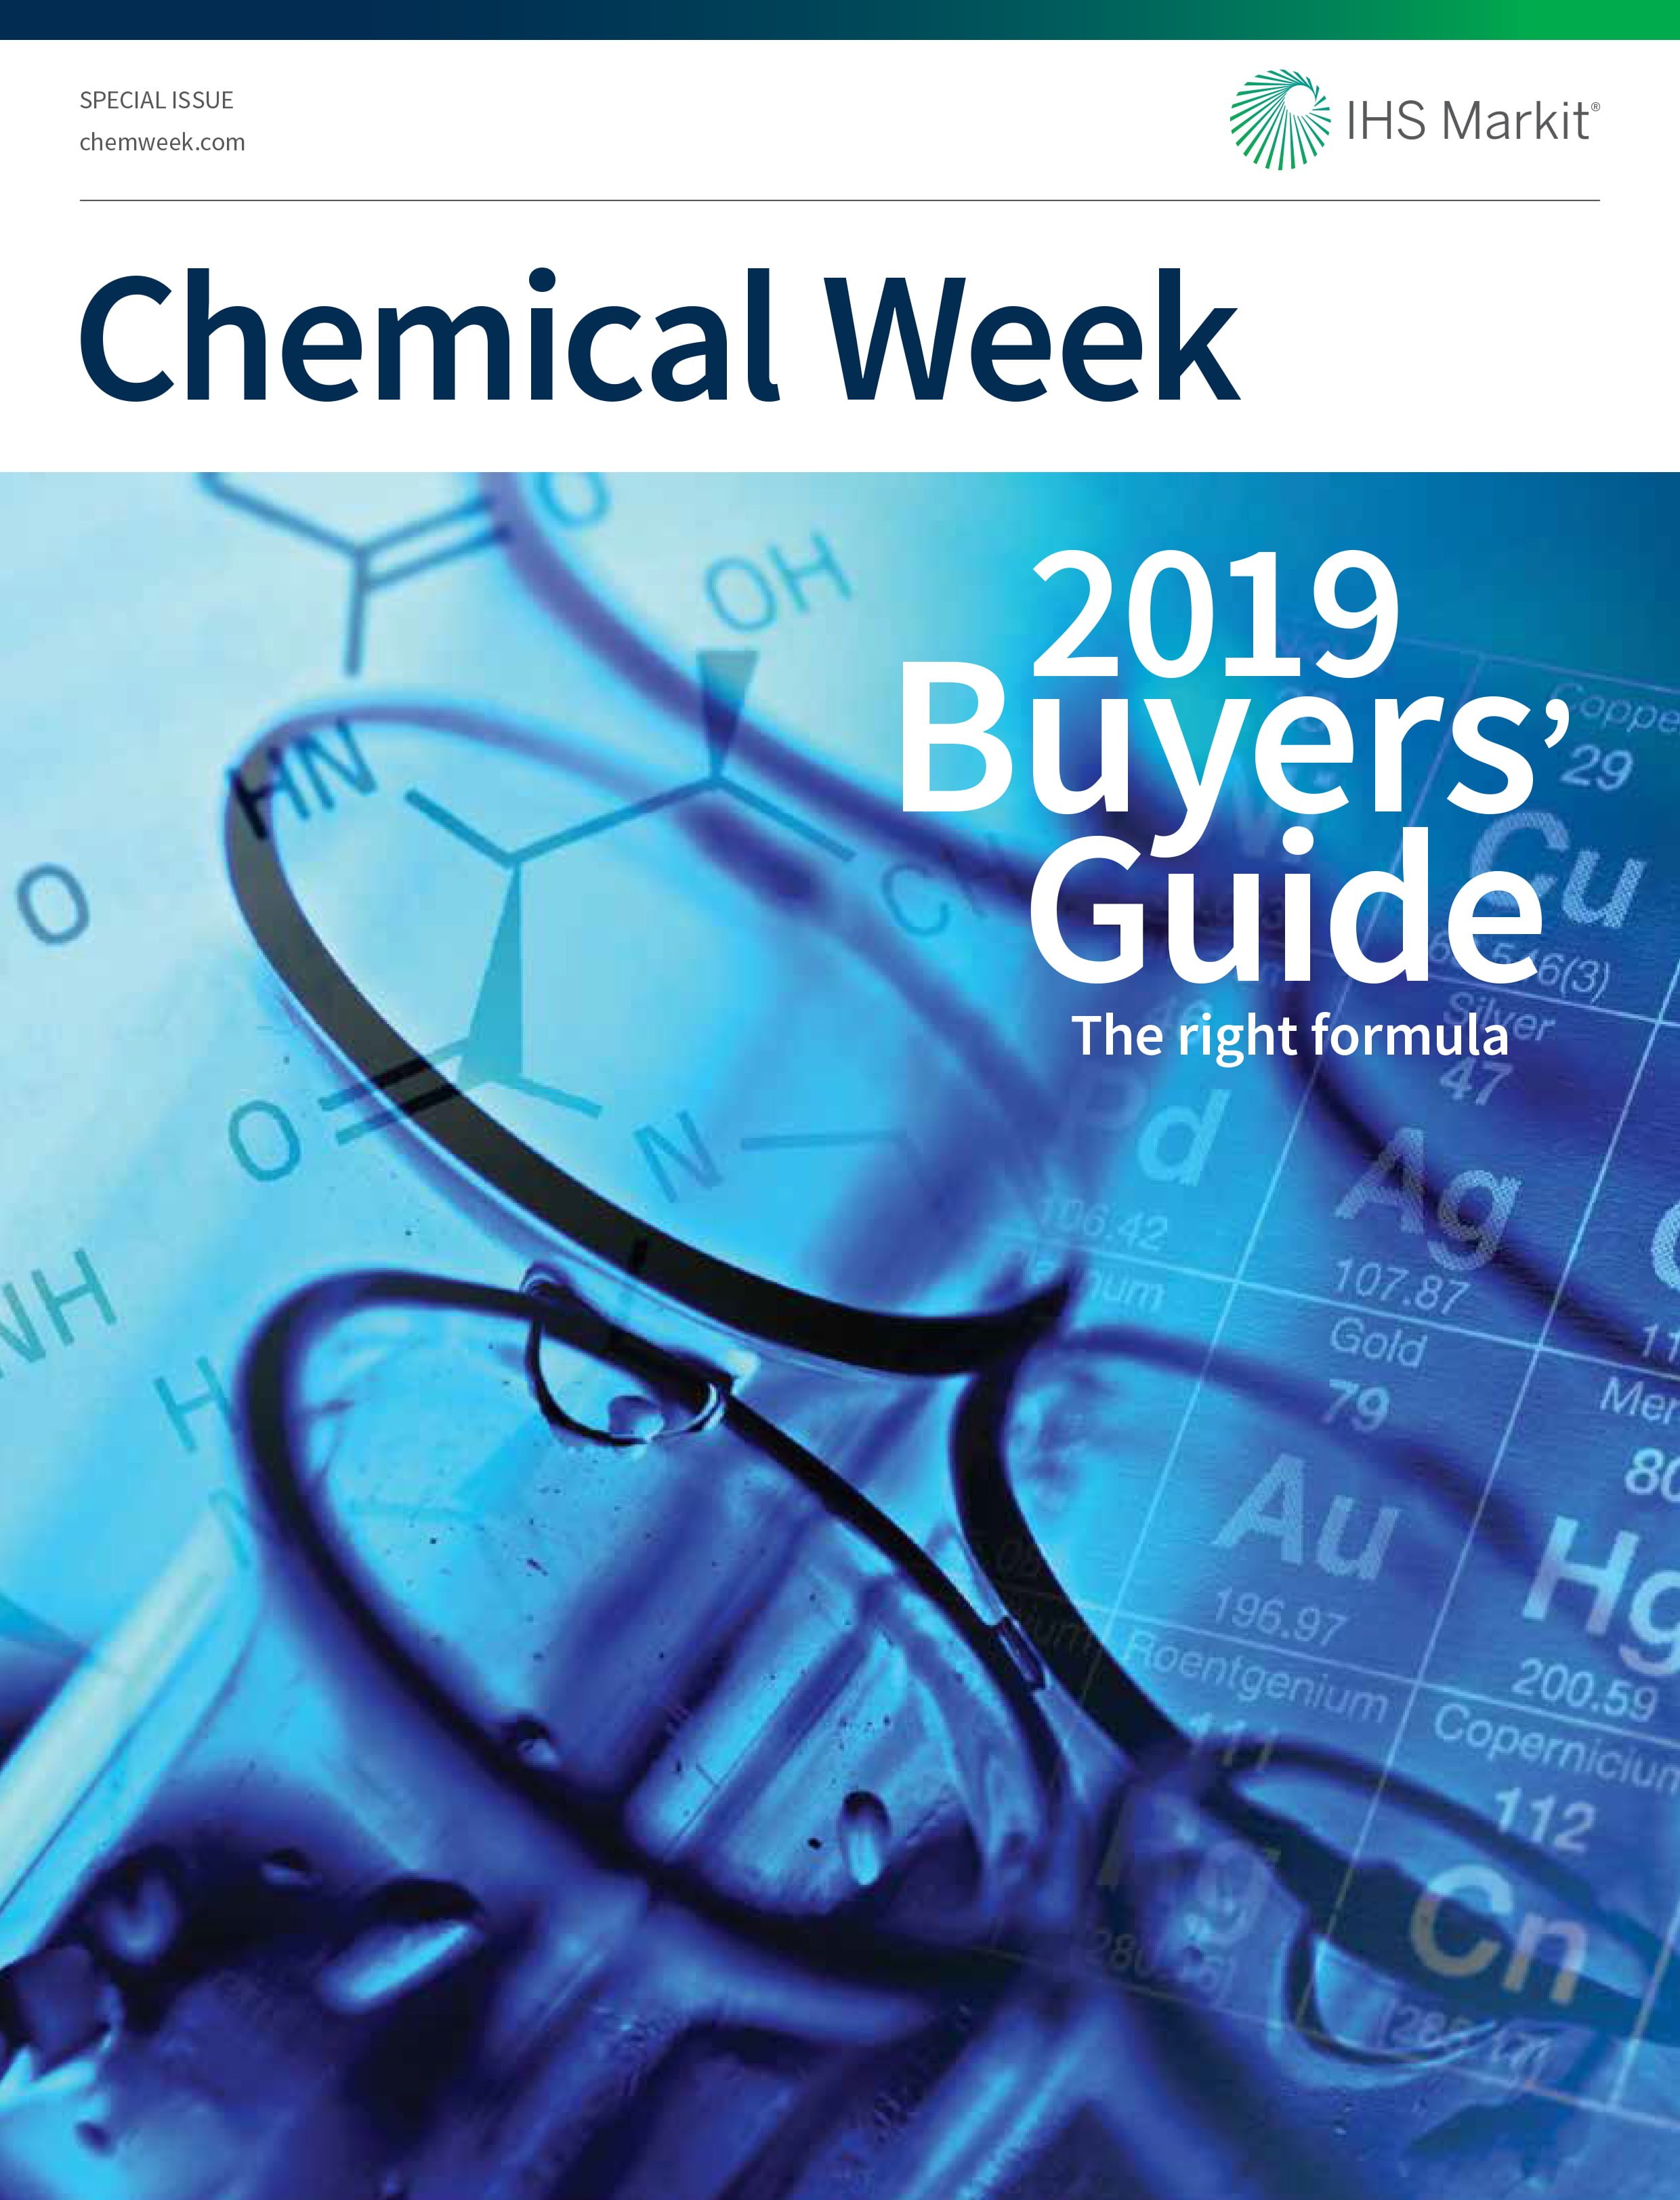 خرید عضویت سایت Chemweek.com دسترسی به اخبار و گزارشهای شیمی سایت Chemical Week یوزر و پسورد مجله هفتگی Chemical user password of Chemweek